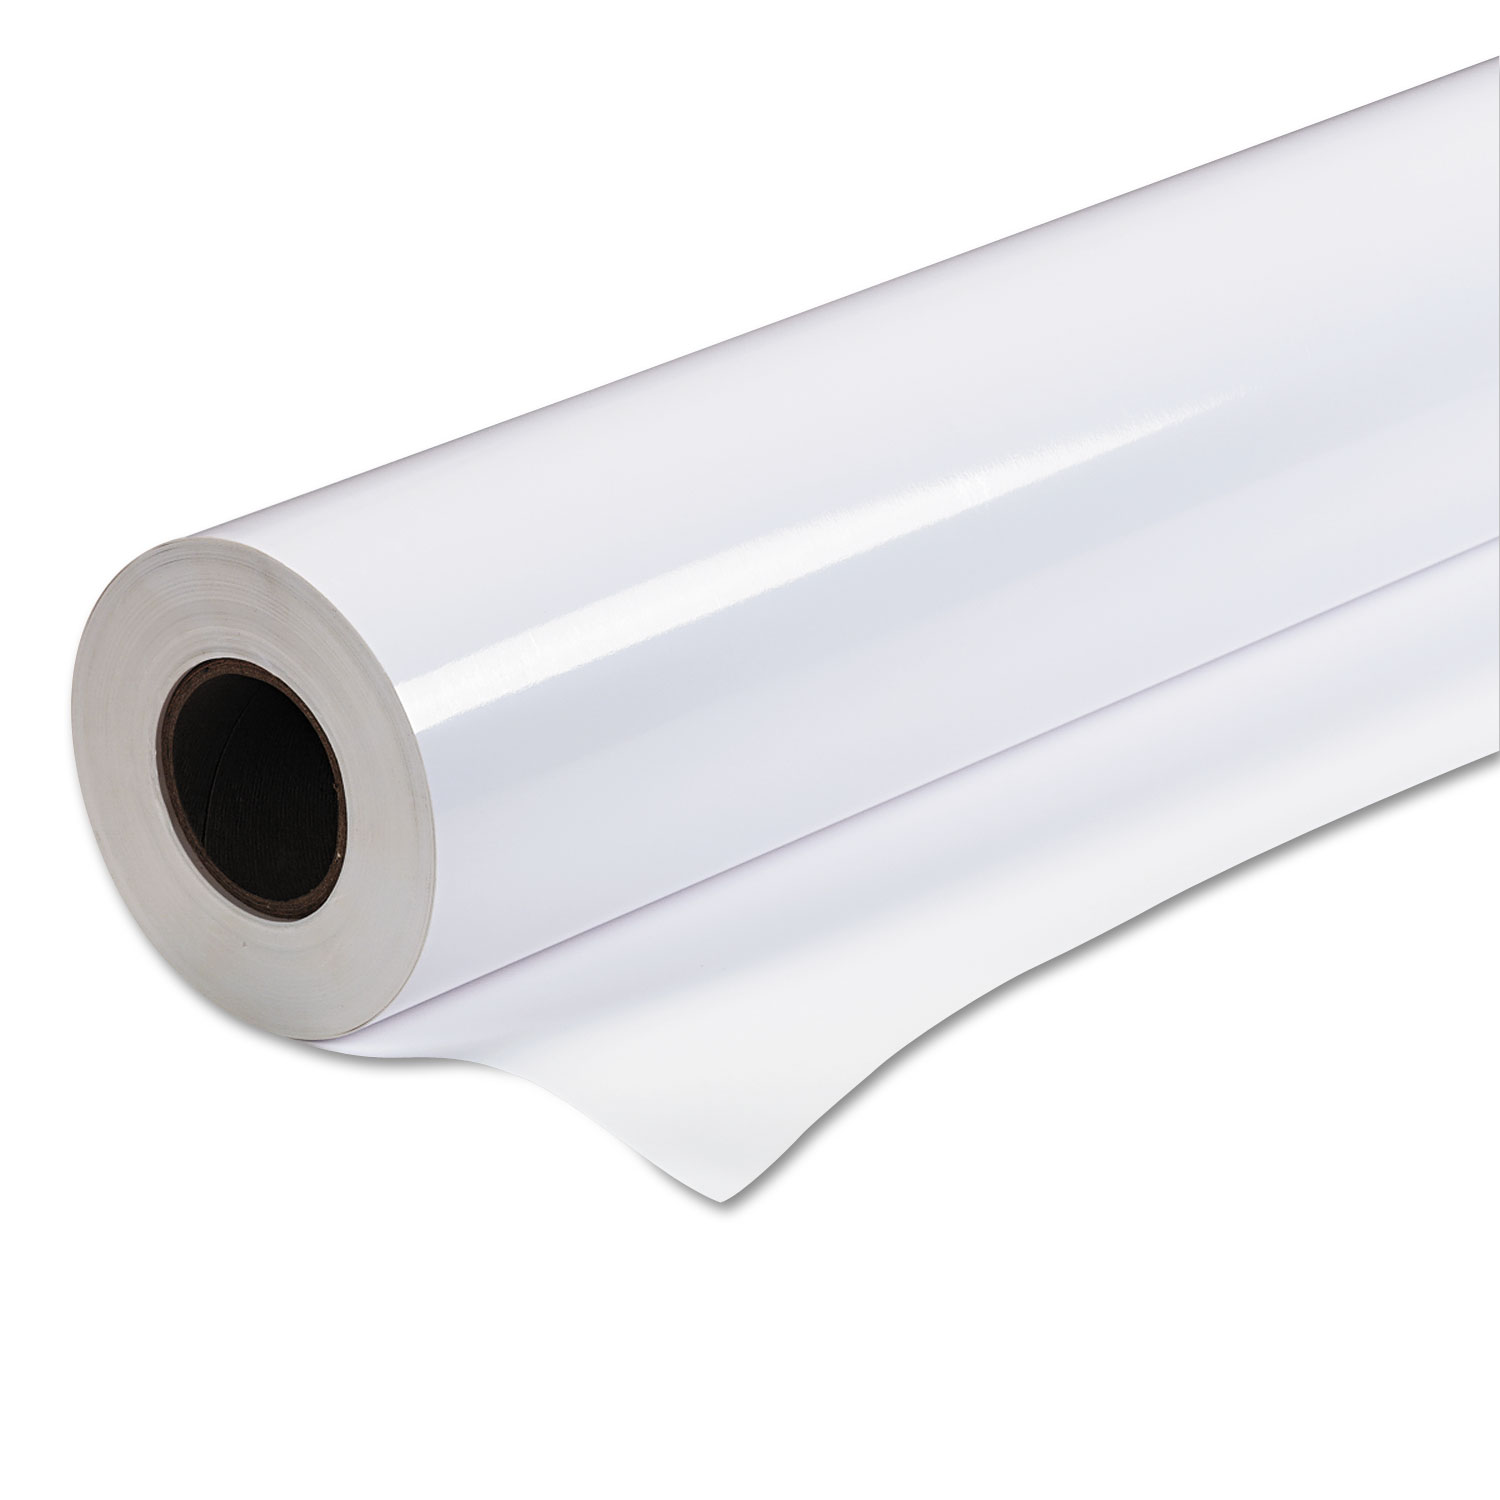  Epson S041393 Premium Semigloss Photo Paper Roll, 7 mil, 24 x 100 ft, Semi-Gloss White (EPSS041393) 